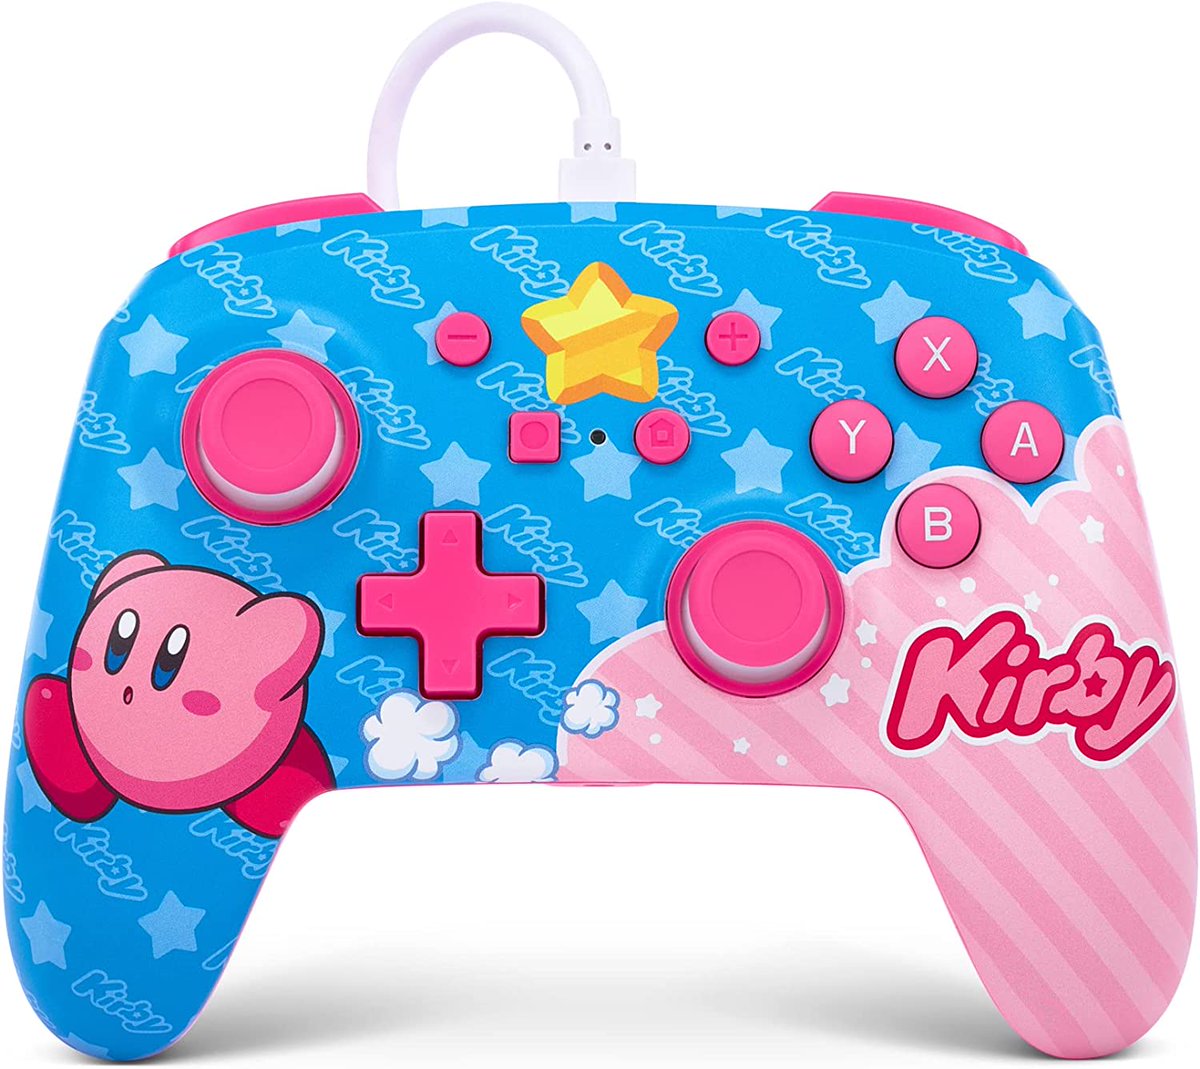 カービィ 「Official Kirby controller for Nintendo  」|THE ART OF VIDEO GAMESのイラスト